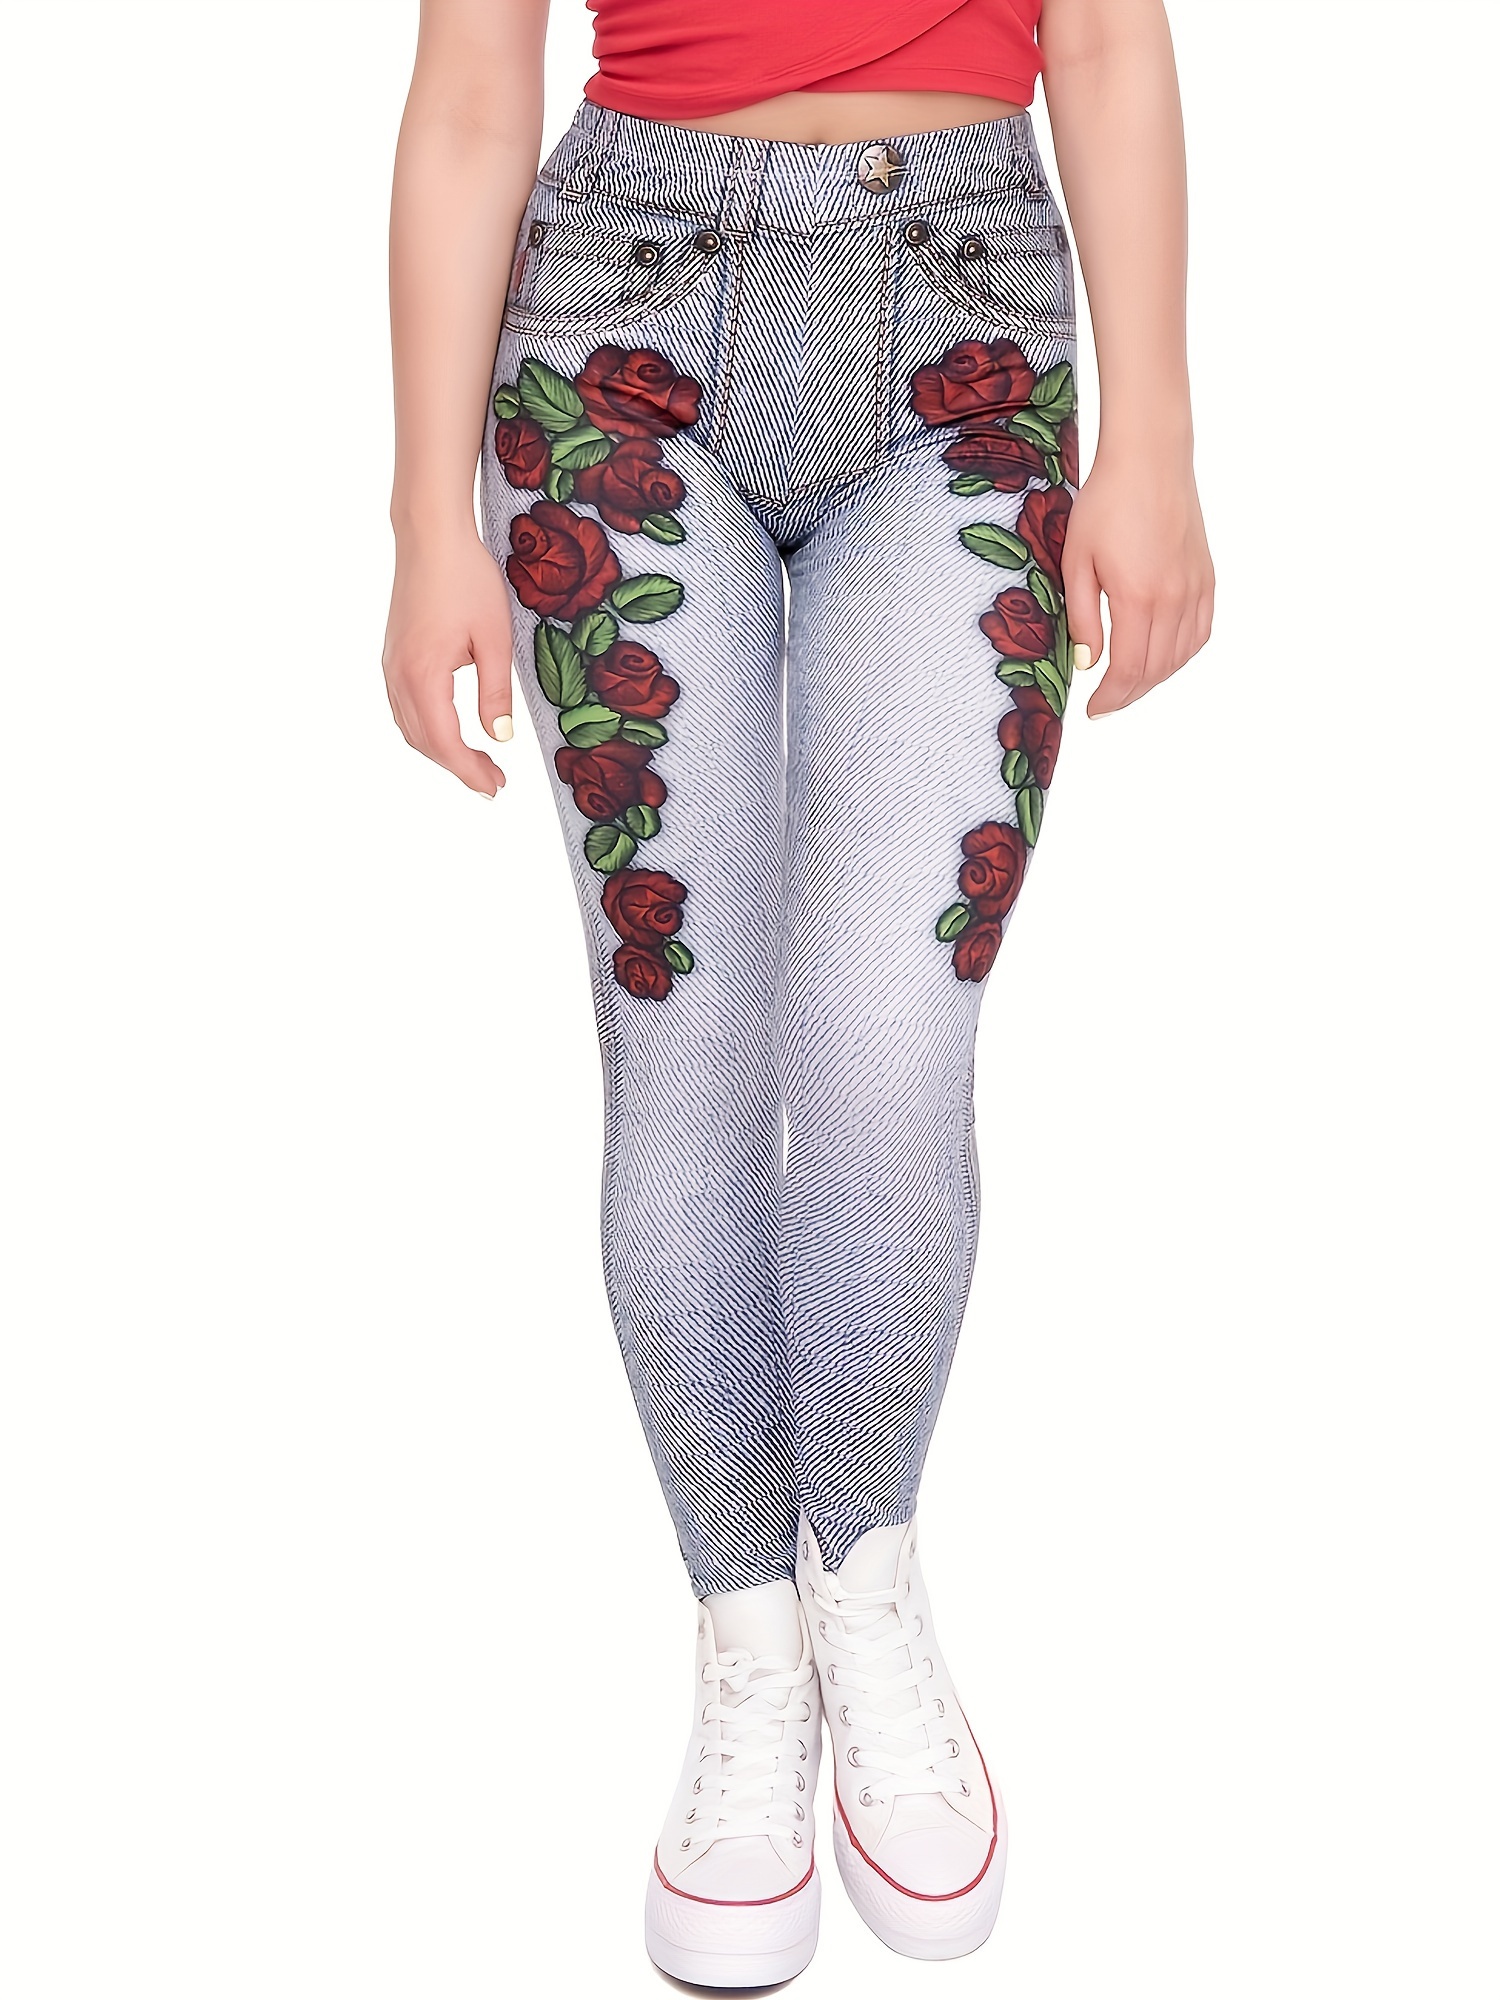 Flower print sports leggings